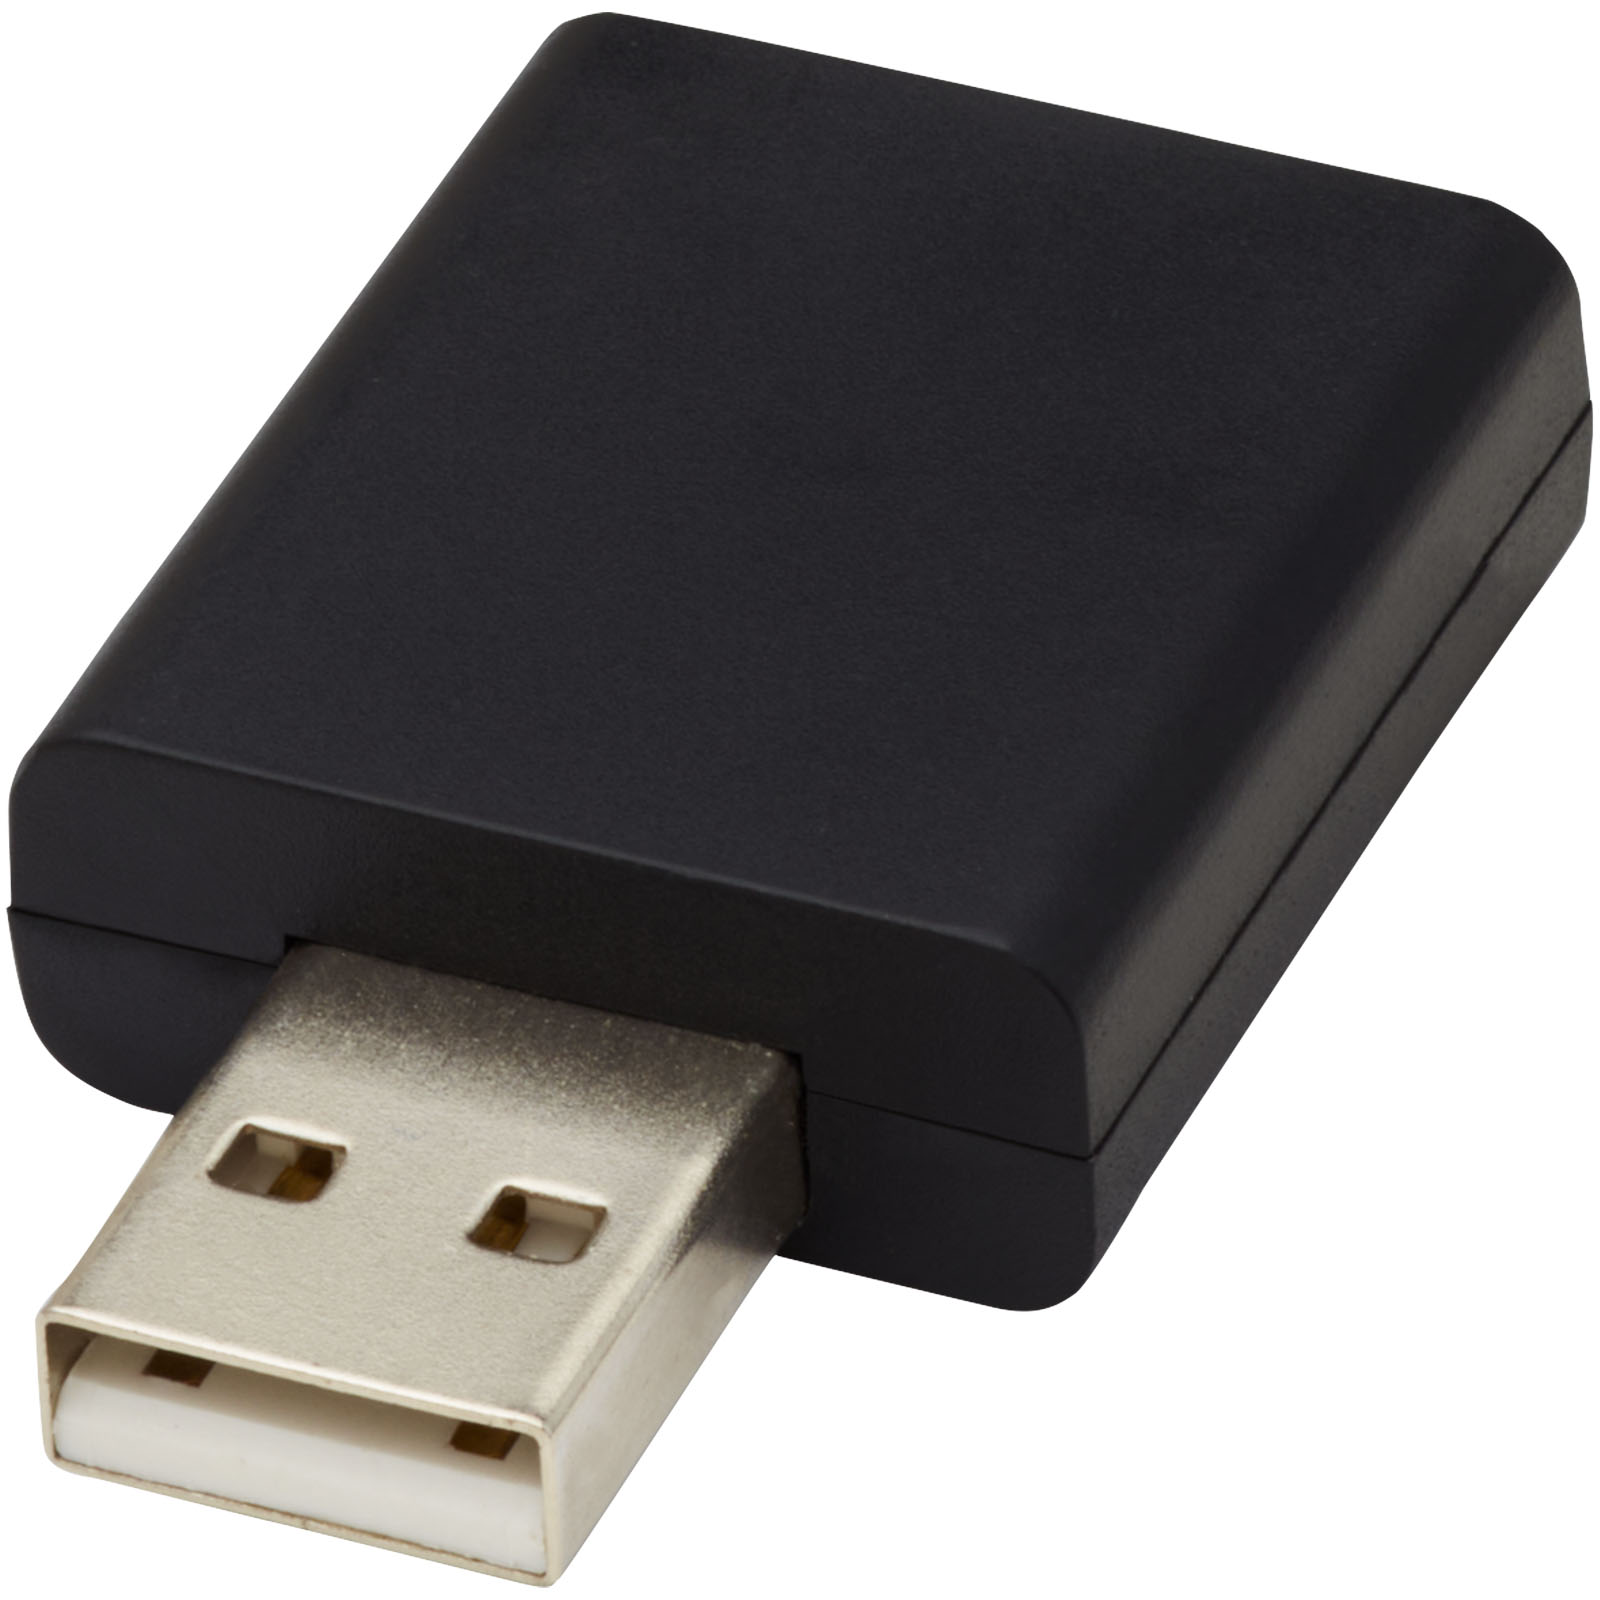 Accessoires pour ordinateur publicitaires - Bloqueur de données USB Incognito